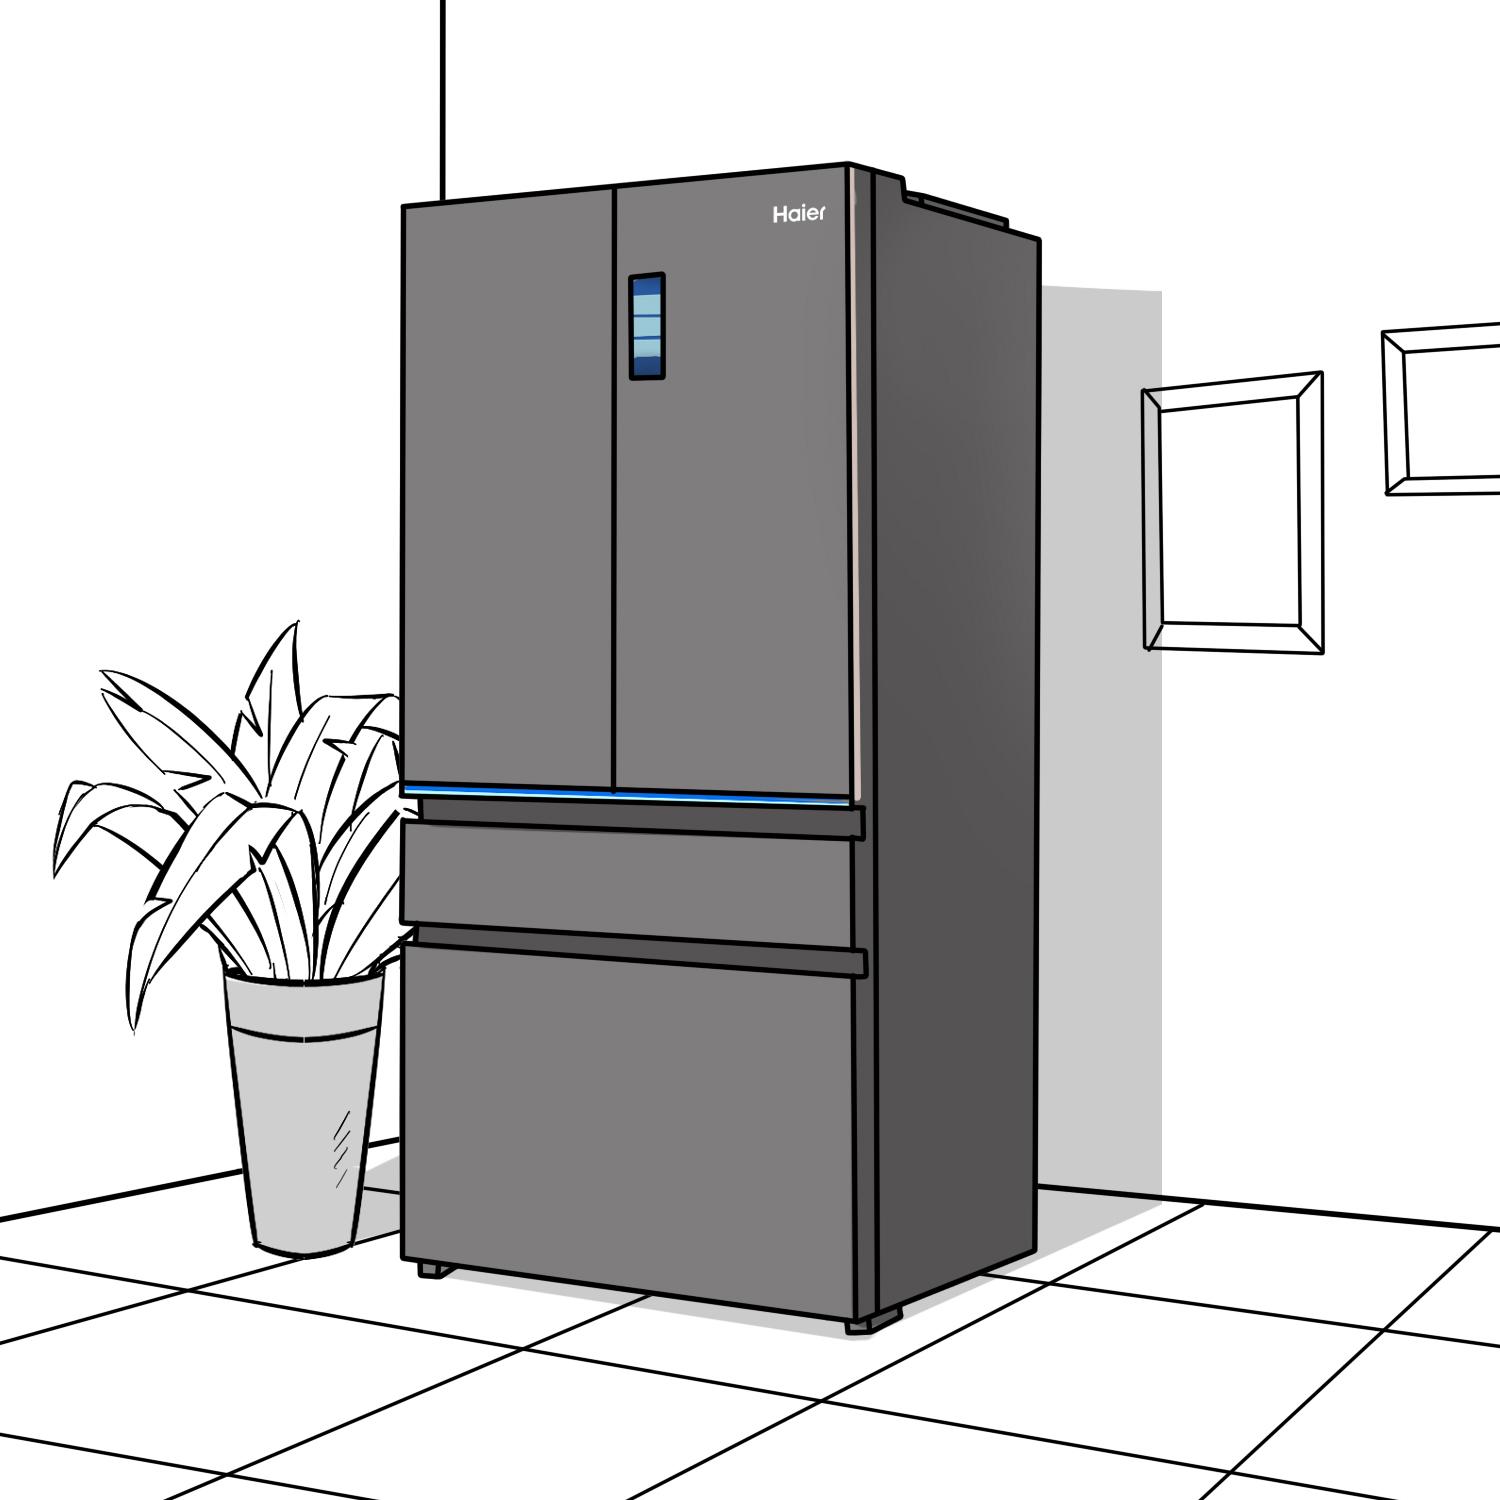 冰箱噪音大怎麼處理 冰箱經常發出嗡嗡聲是什麼原因